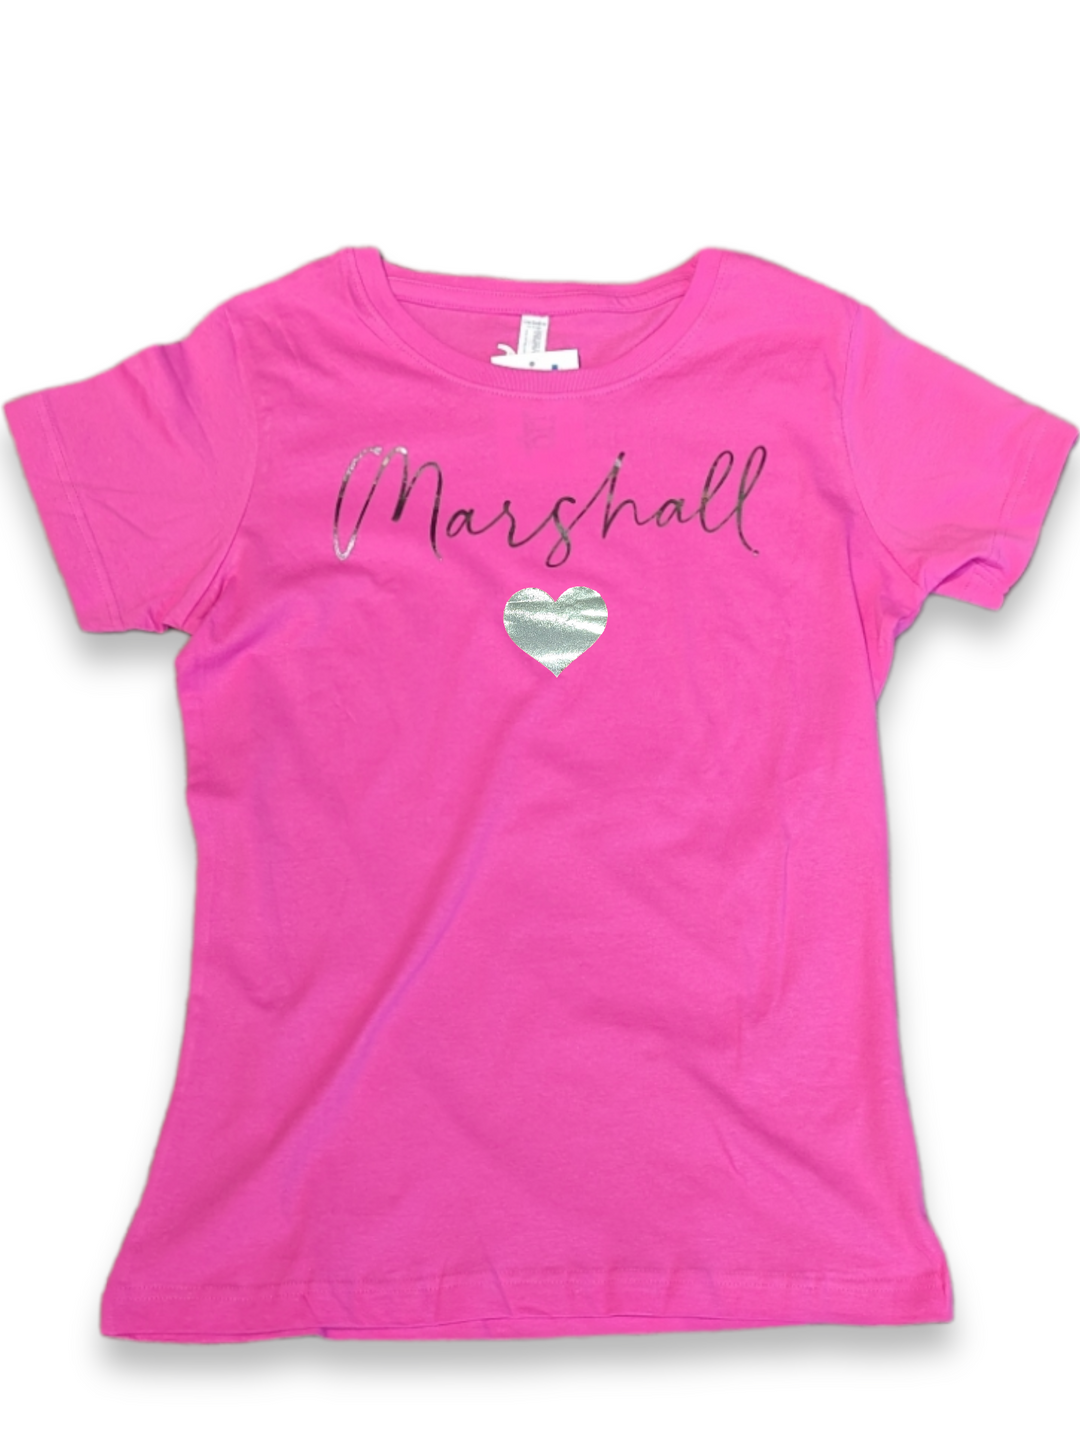 Marshall University Love Women's Tee Shirt